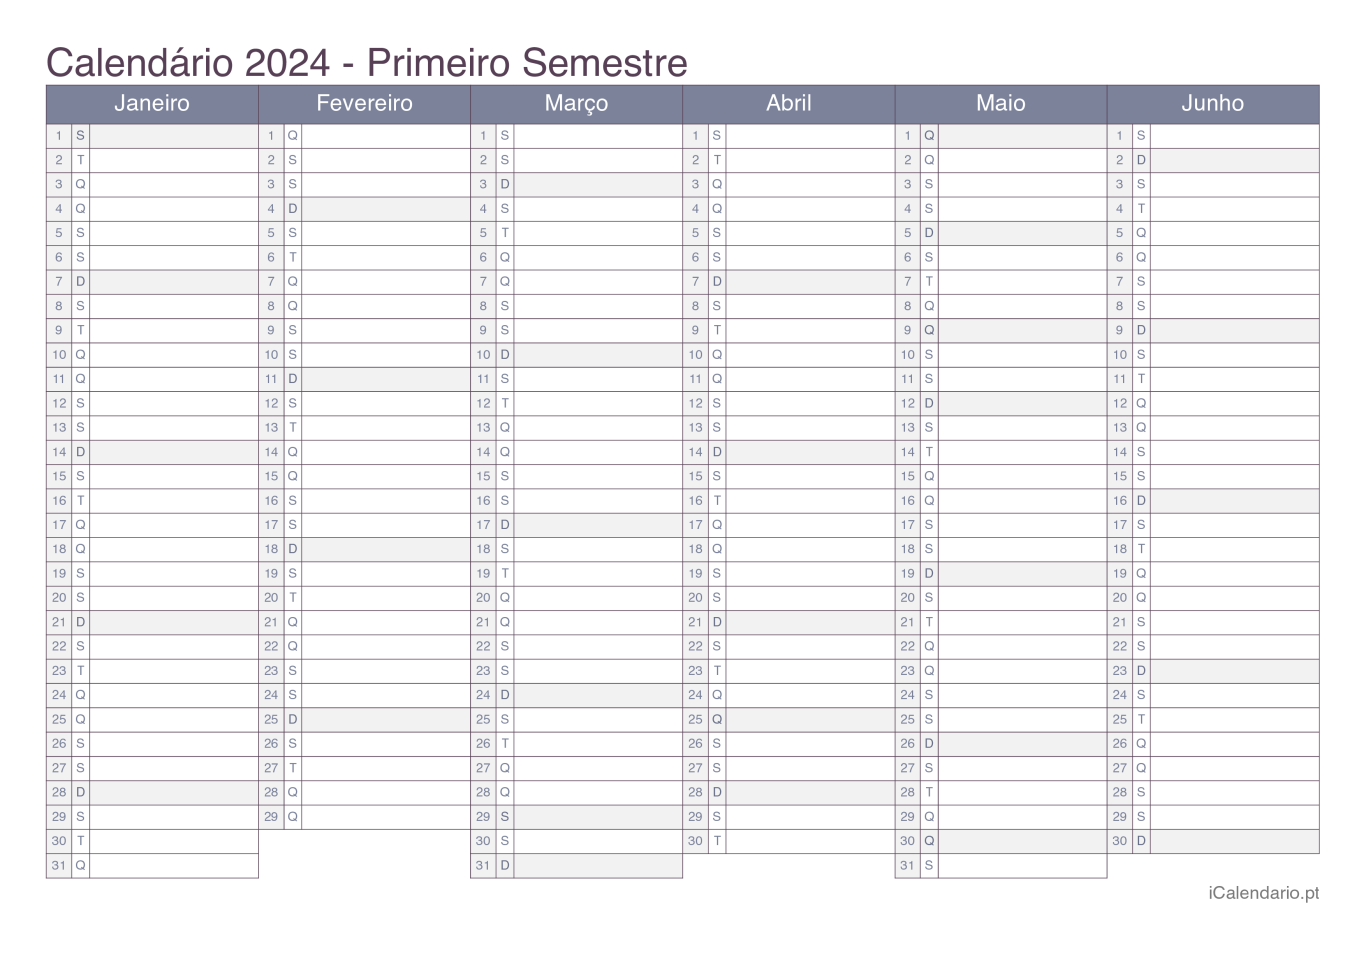 Calendário por semestre 2024 - Office